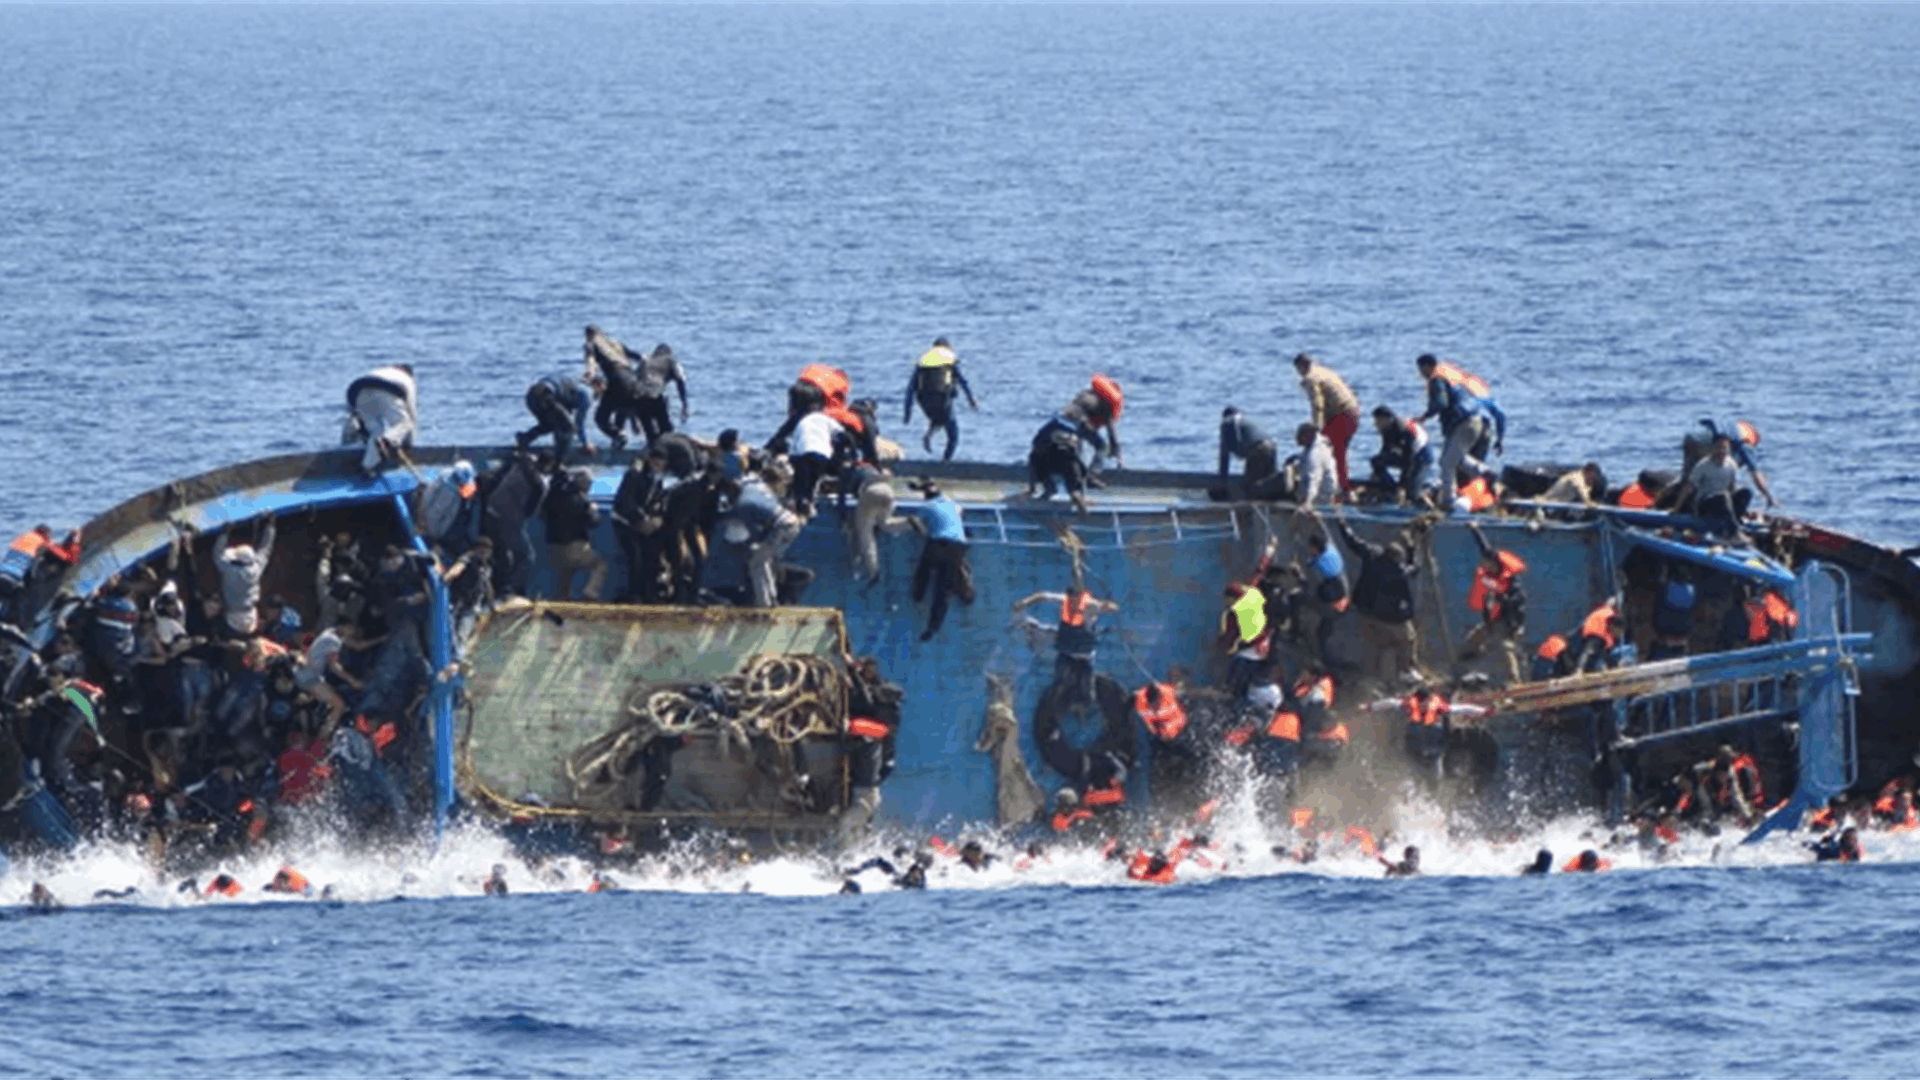 صحيفة أمريكية تتهم اليونان بإغراق قارب للمهاجرين والتسبب بوفاة من فيه